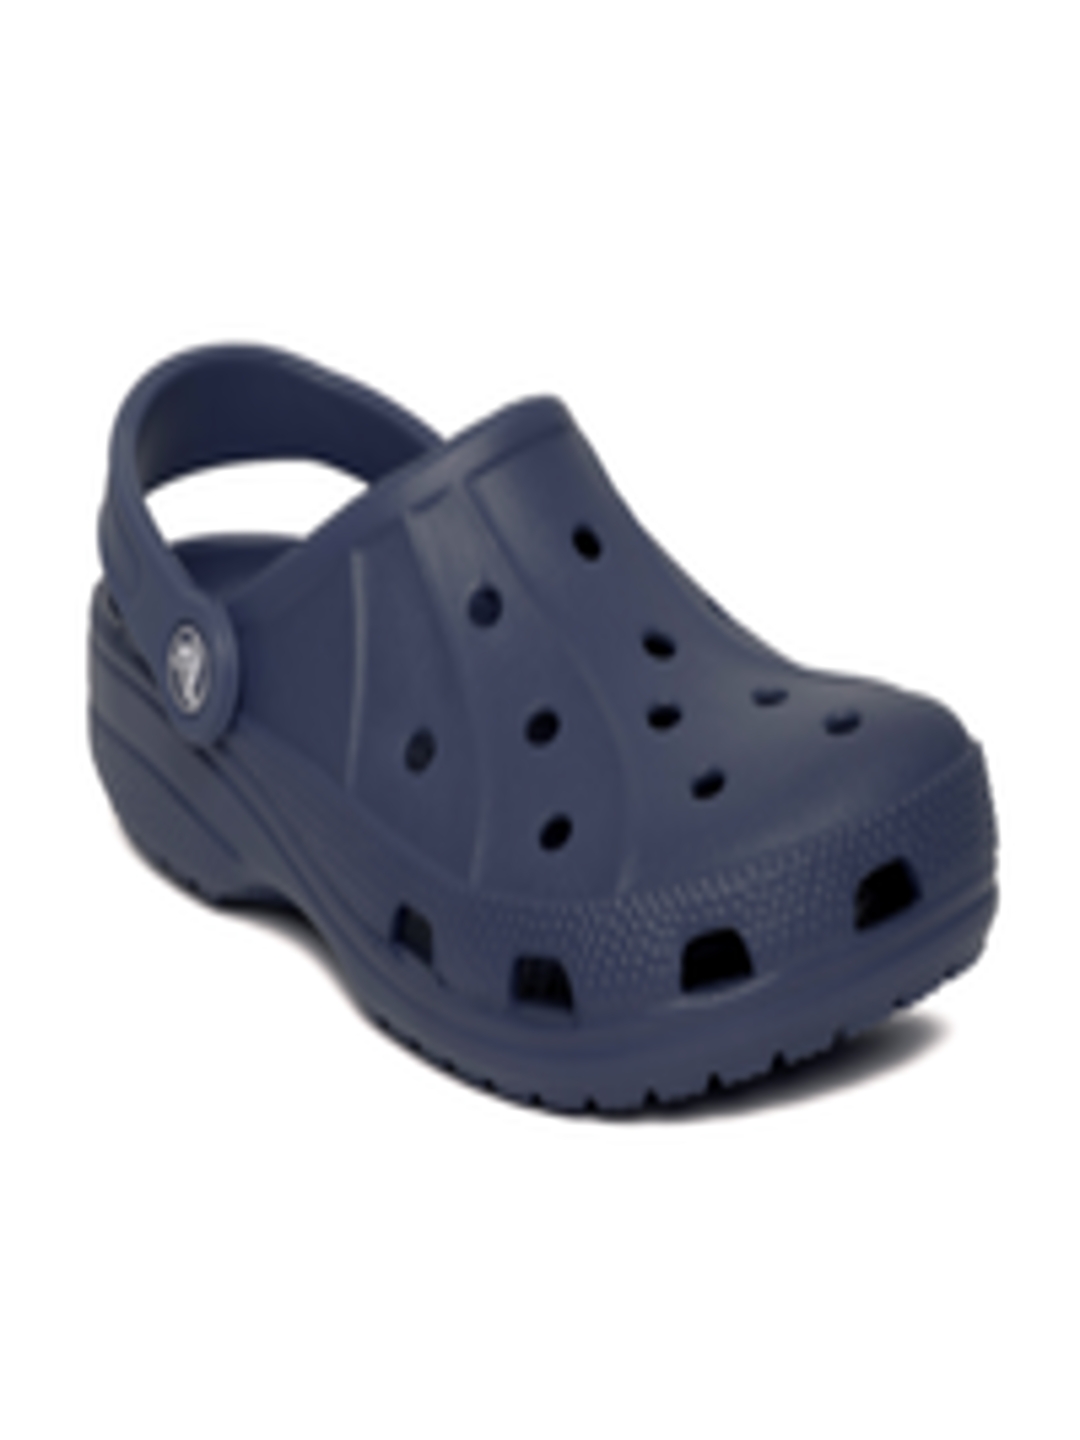 Buy Crocs Ralen Unisex Navy Clogs - Flip Flops for Unisex 629204 | Myntra